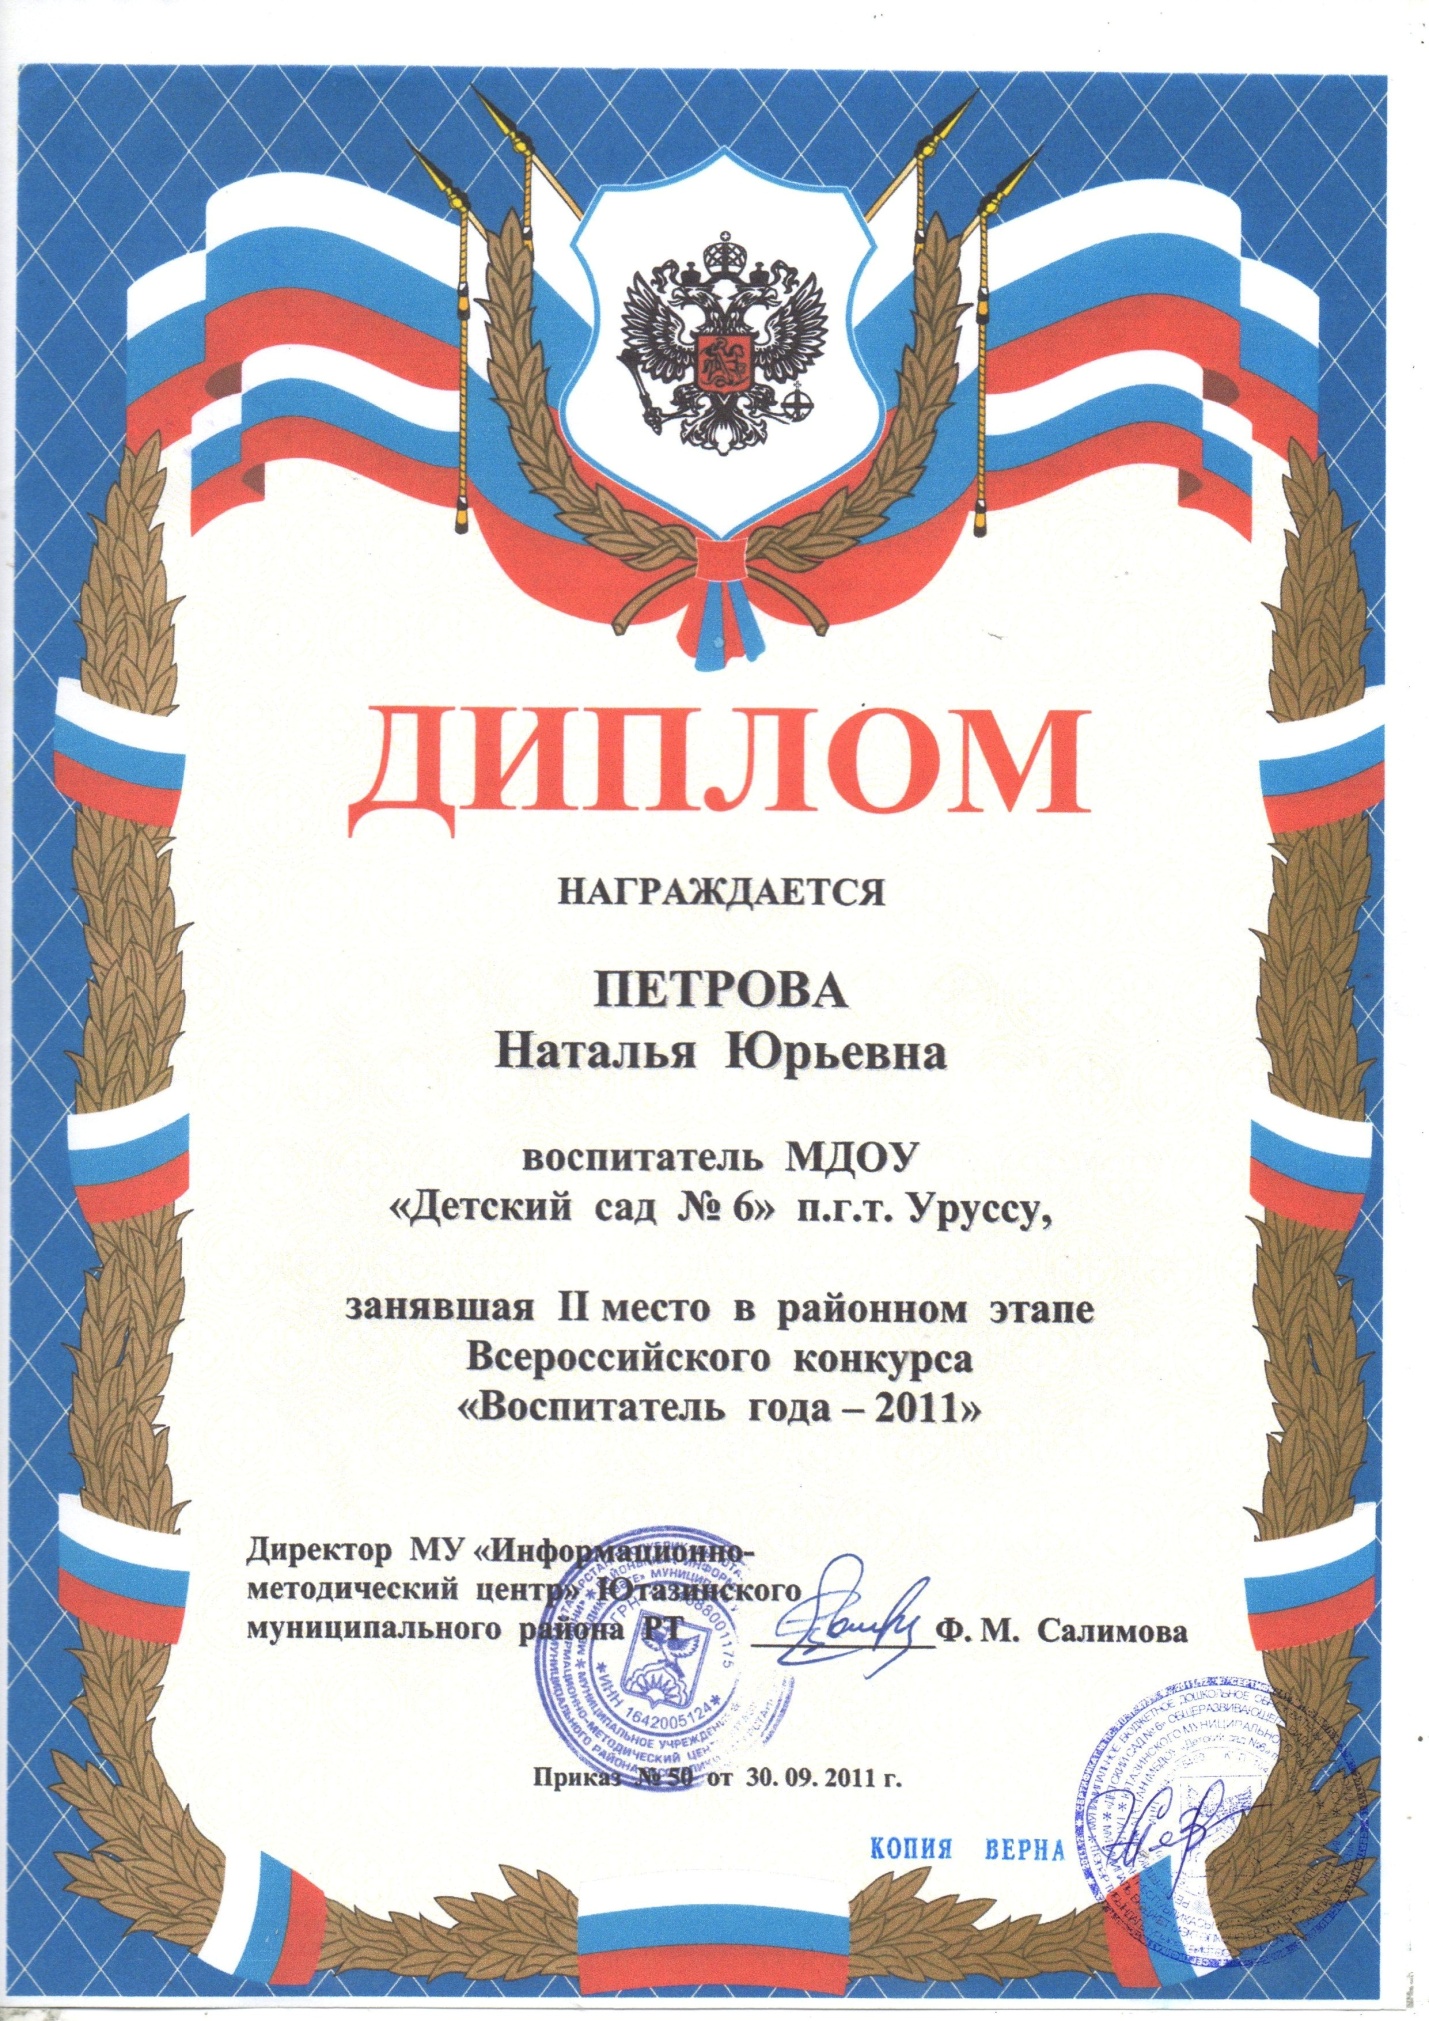 Всероссийский конкурс Воспитатель года - 2011